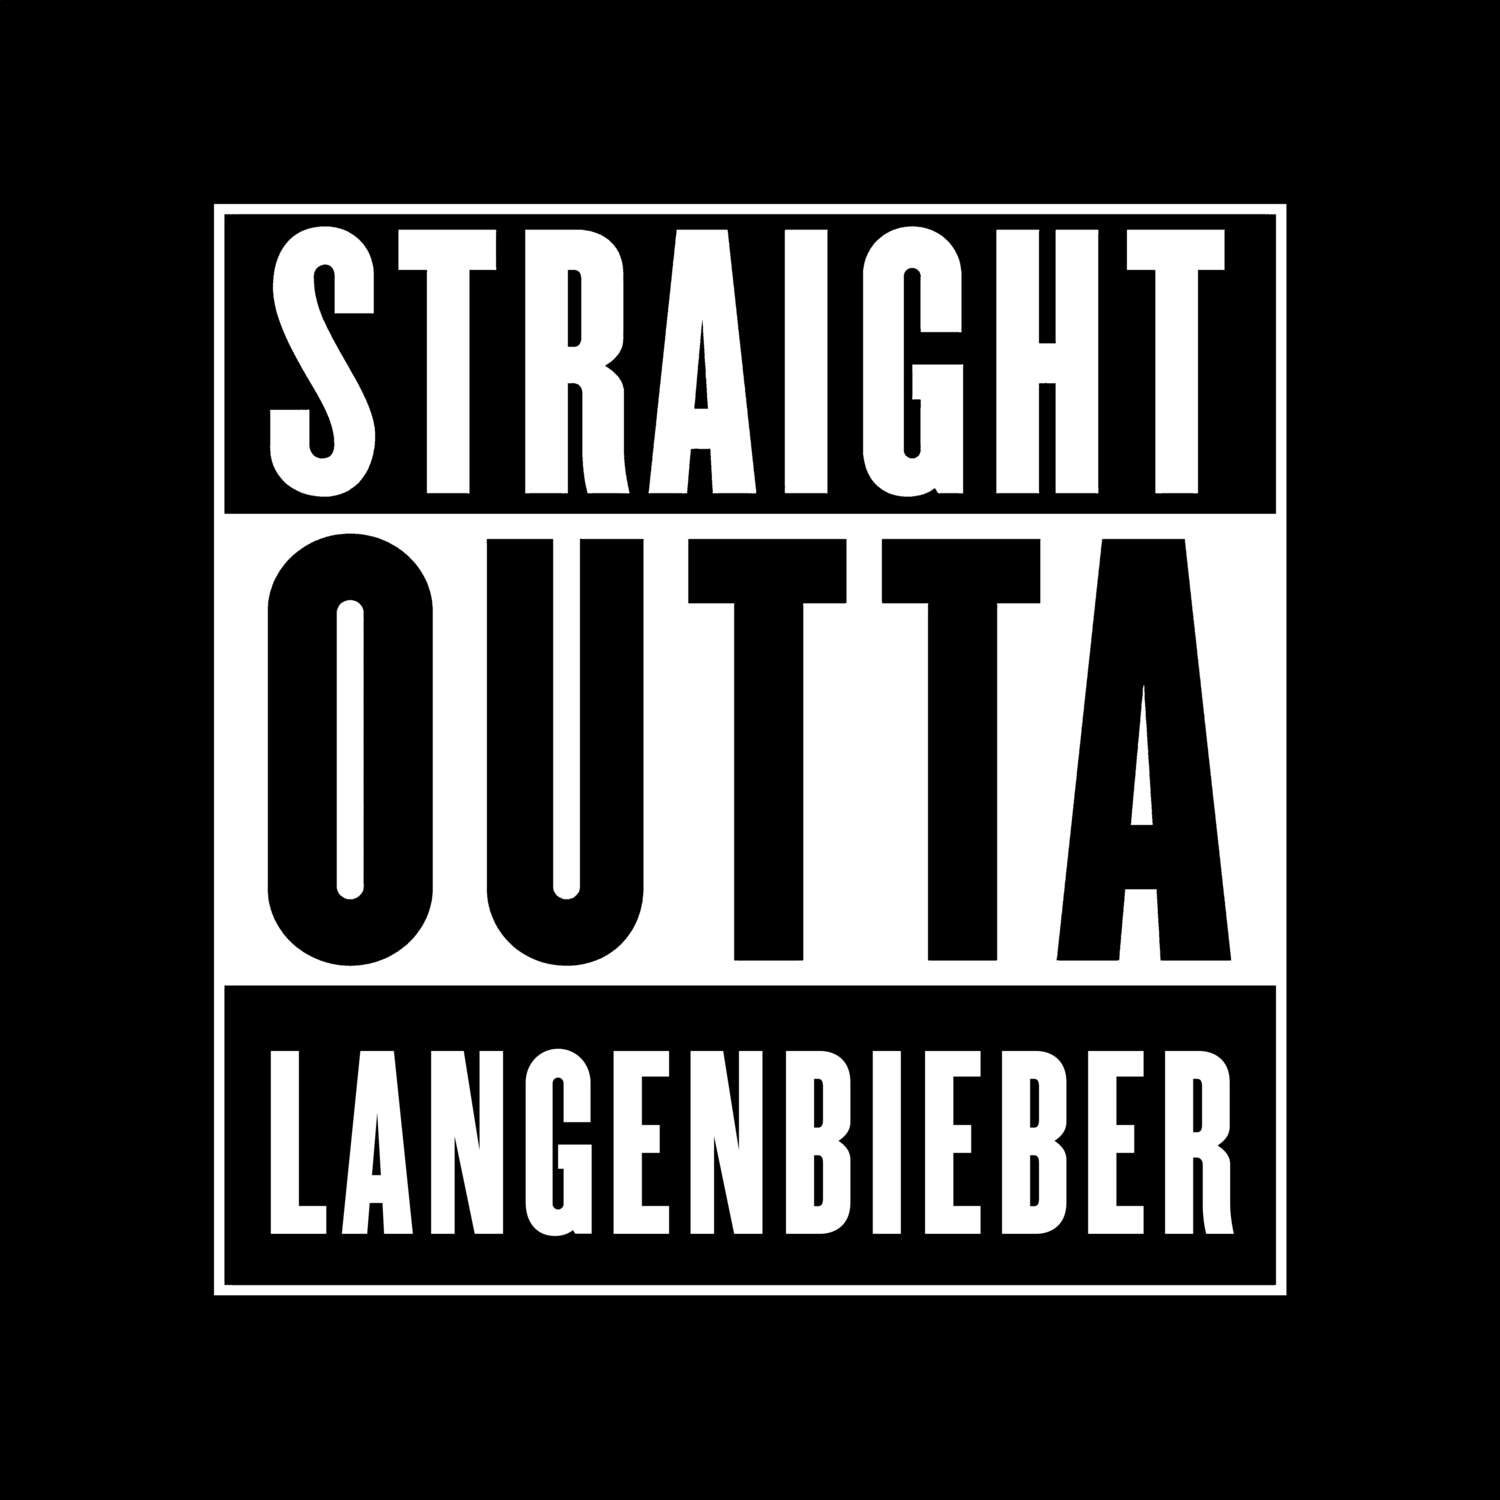 Langenbieber T-Shirt »Straight Outta«